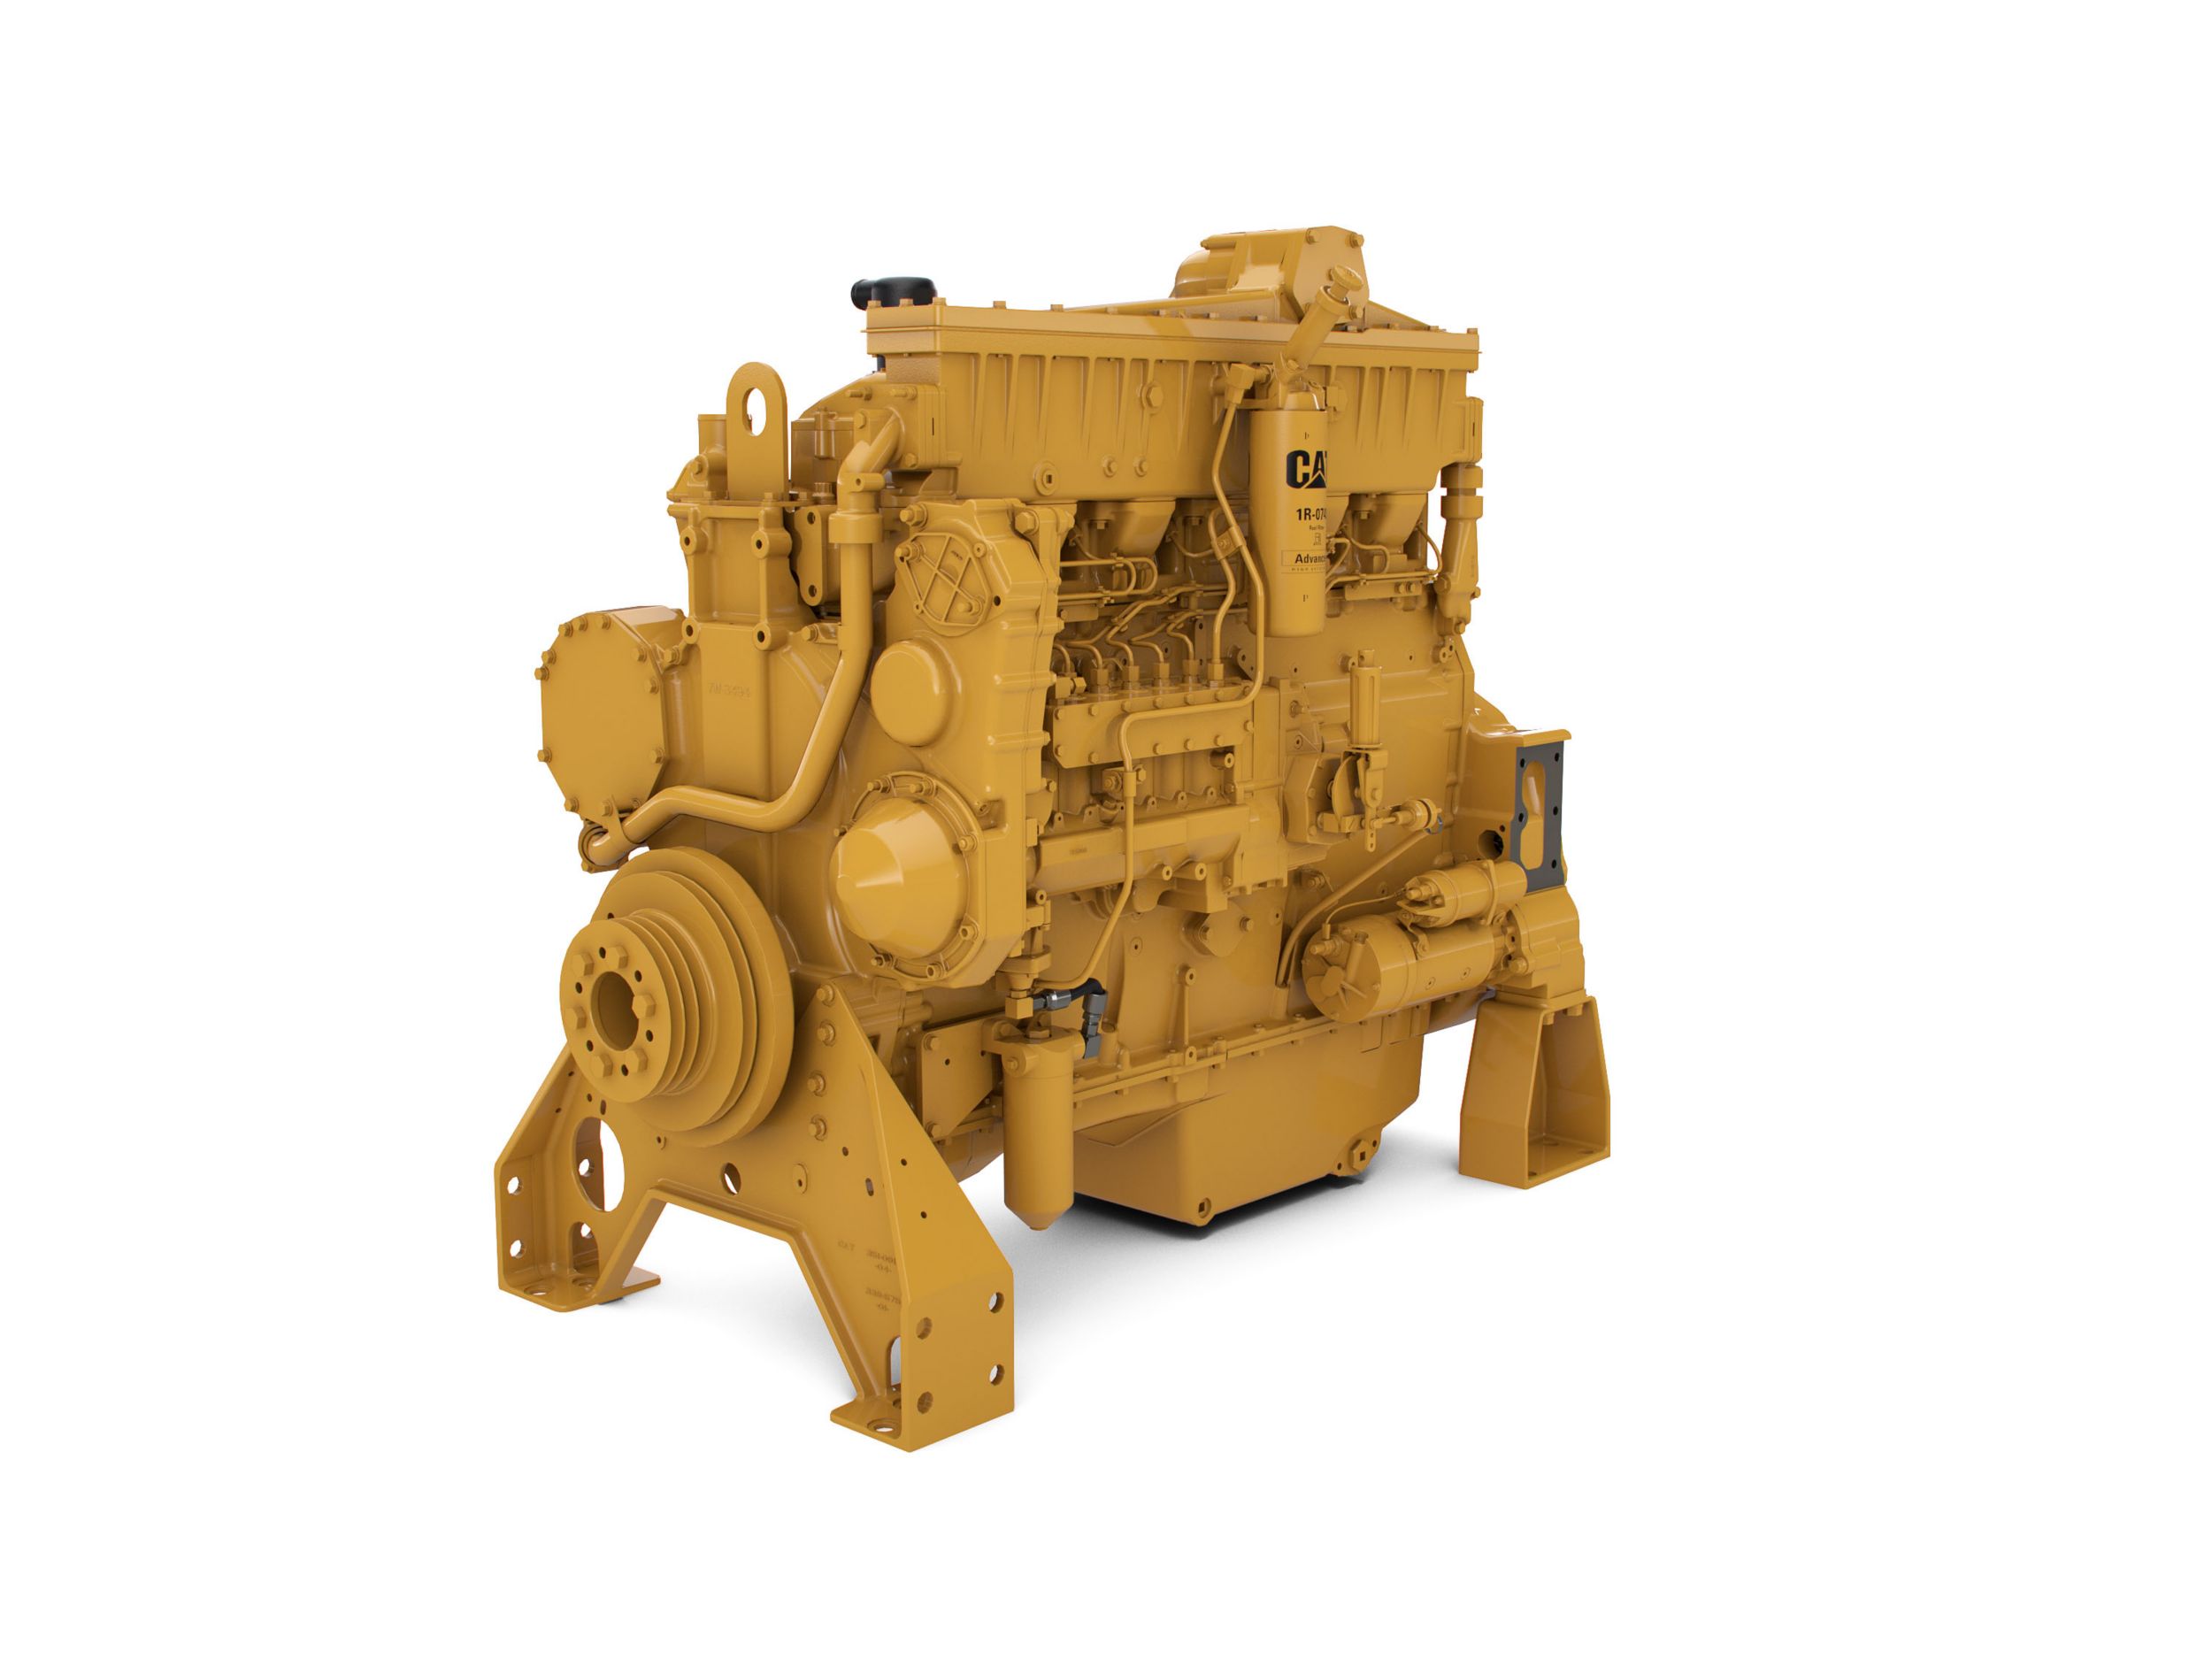 3406C 産業用ディーゼルエンジン | Cat | Caterpillar